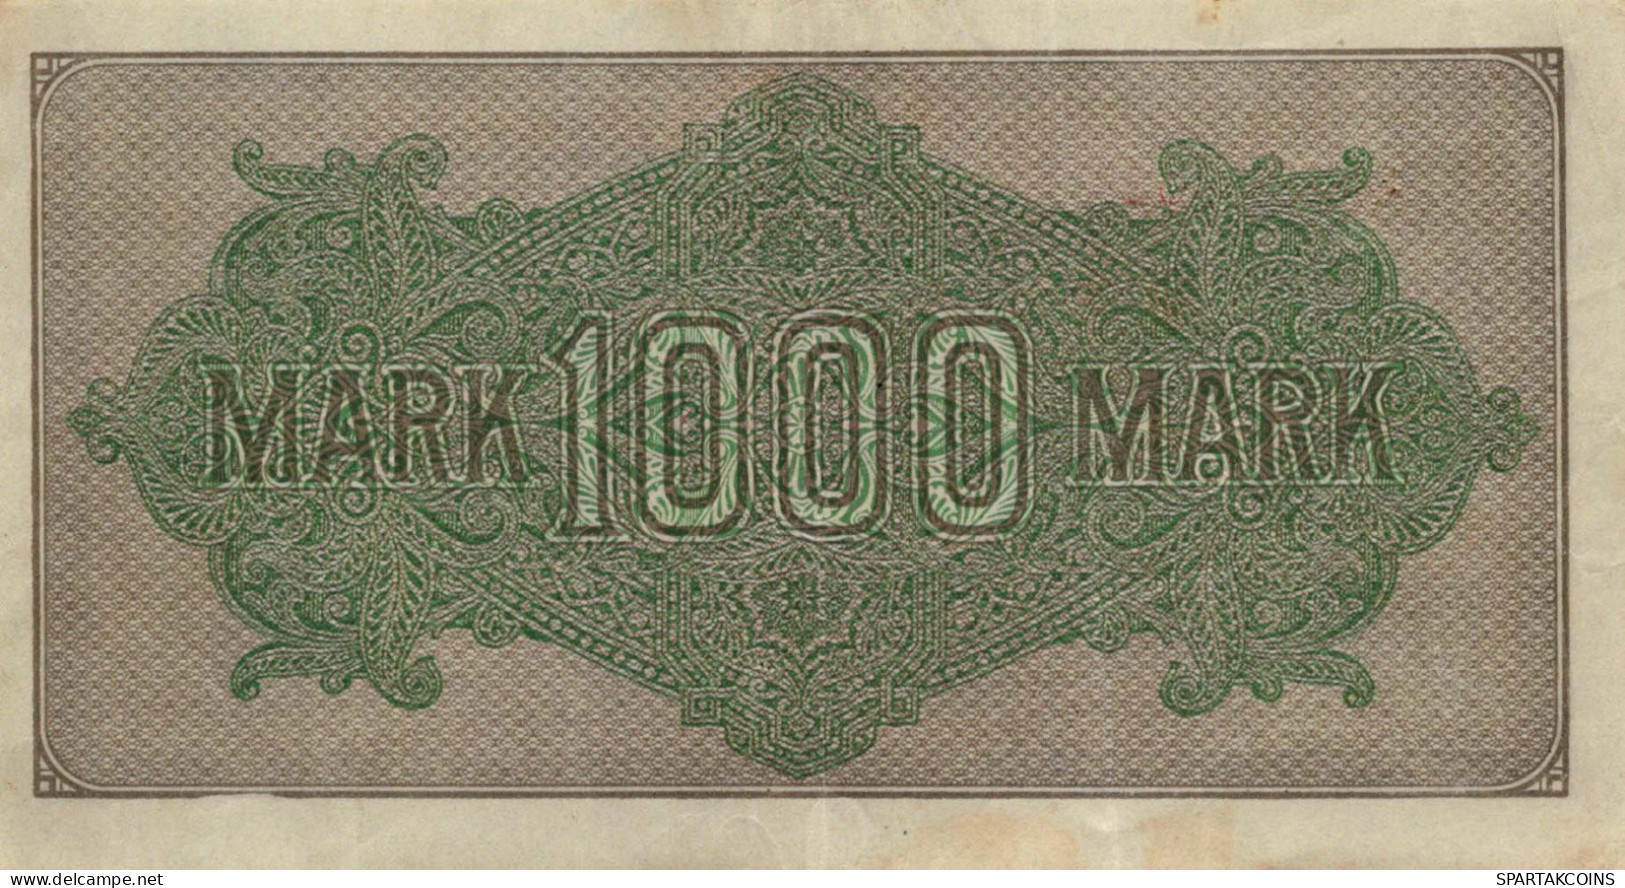 1000 MARK 1922 Stadt BERLIN DEUTSCHLAND Papiergeld Banknote #PL018 - [11] Local Banknote Issues